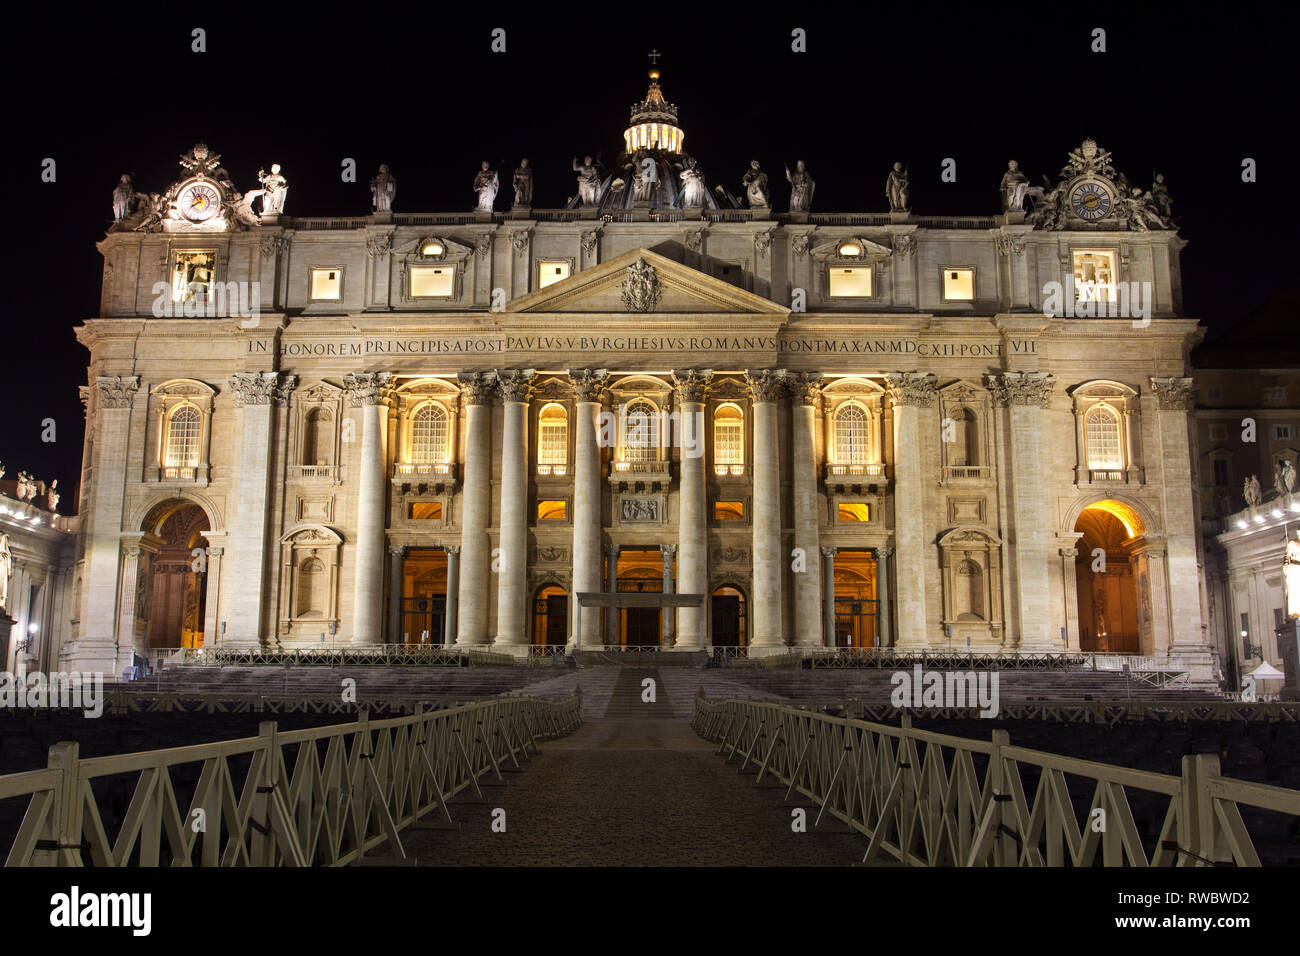 Vue frontale de la façade principale de la Basilique Saint Pierre la nuit - (Basilica di San Pietro) - Cité du Vatican - Rome Banque D'Images